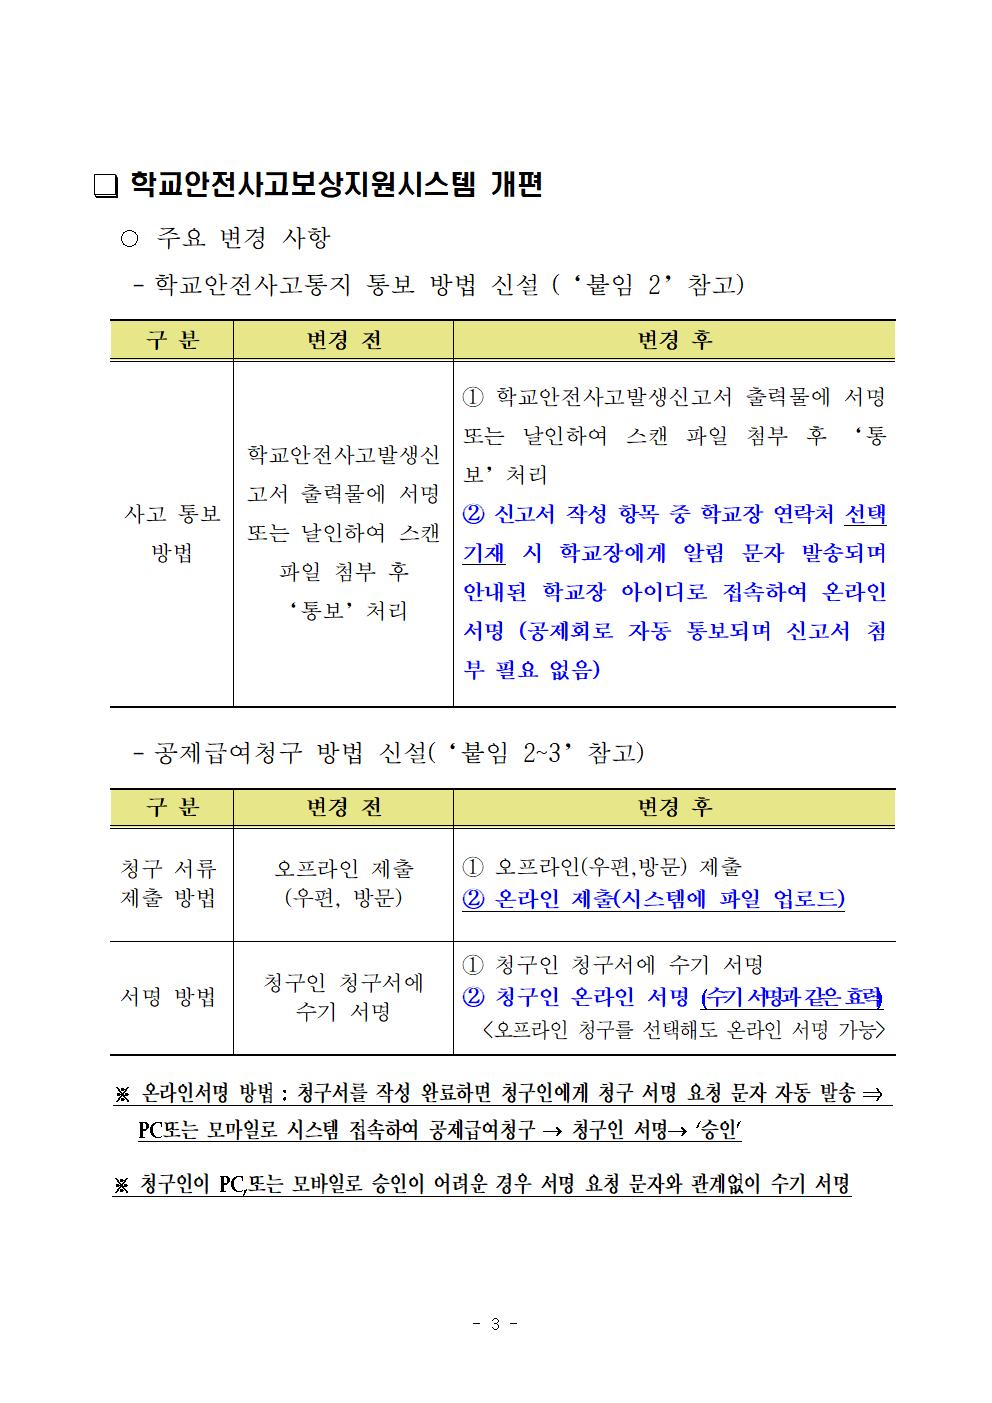 [풍광초등학교-7830 (첨부) 충청북도학교안전공제회] 주요 변경사항 안내003